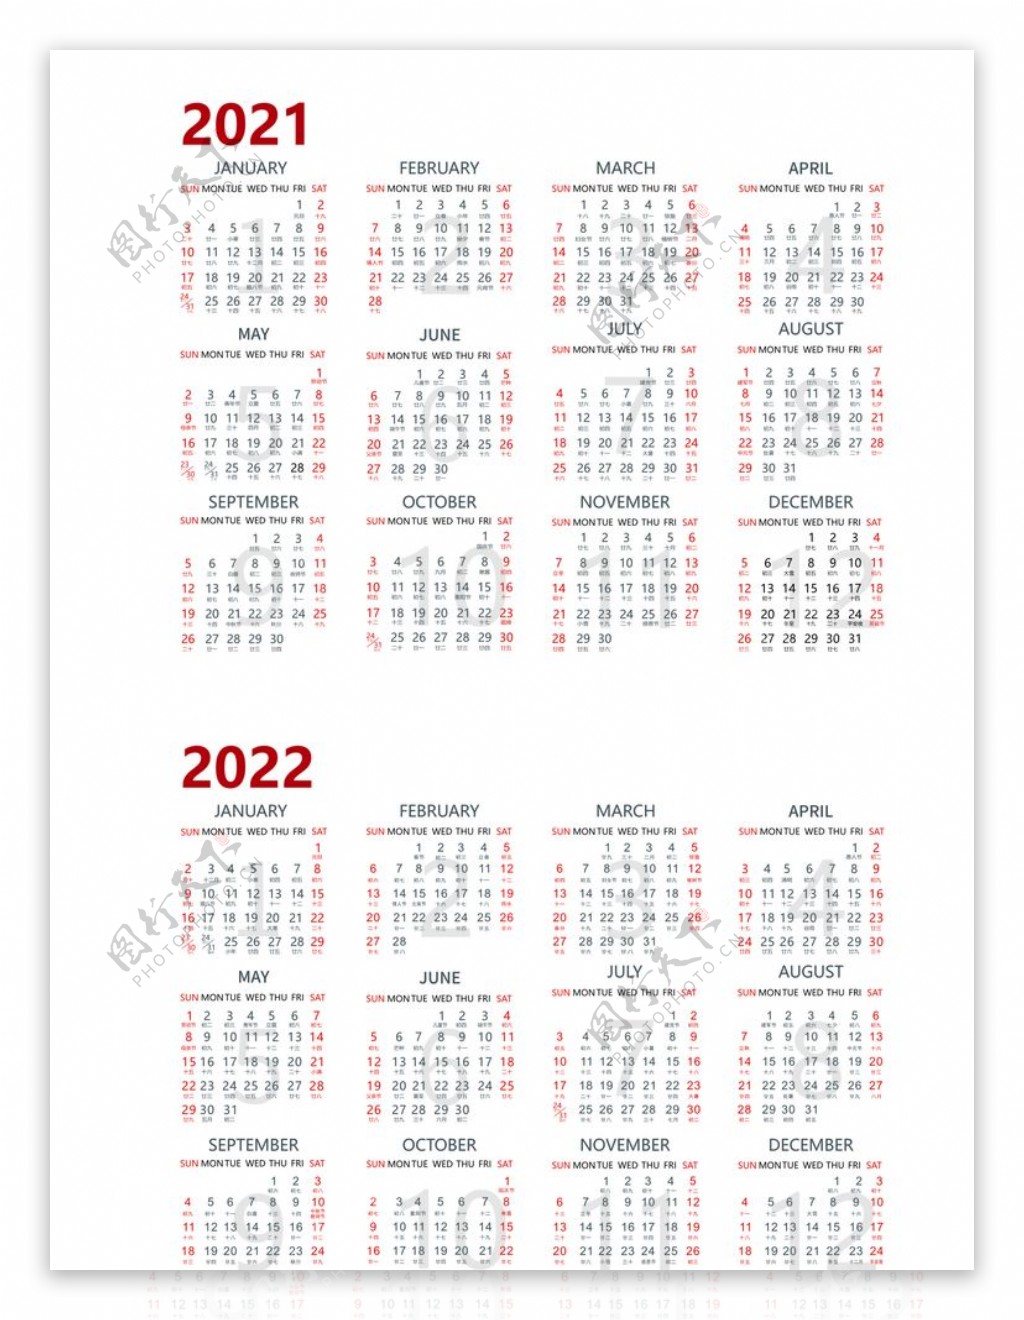 20212022日历台历图片